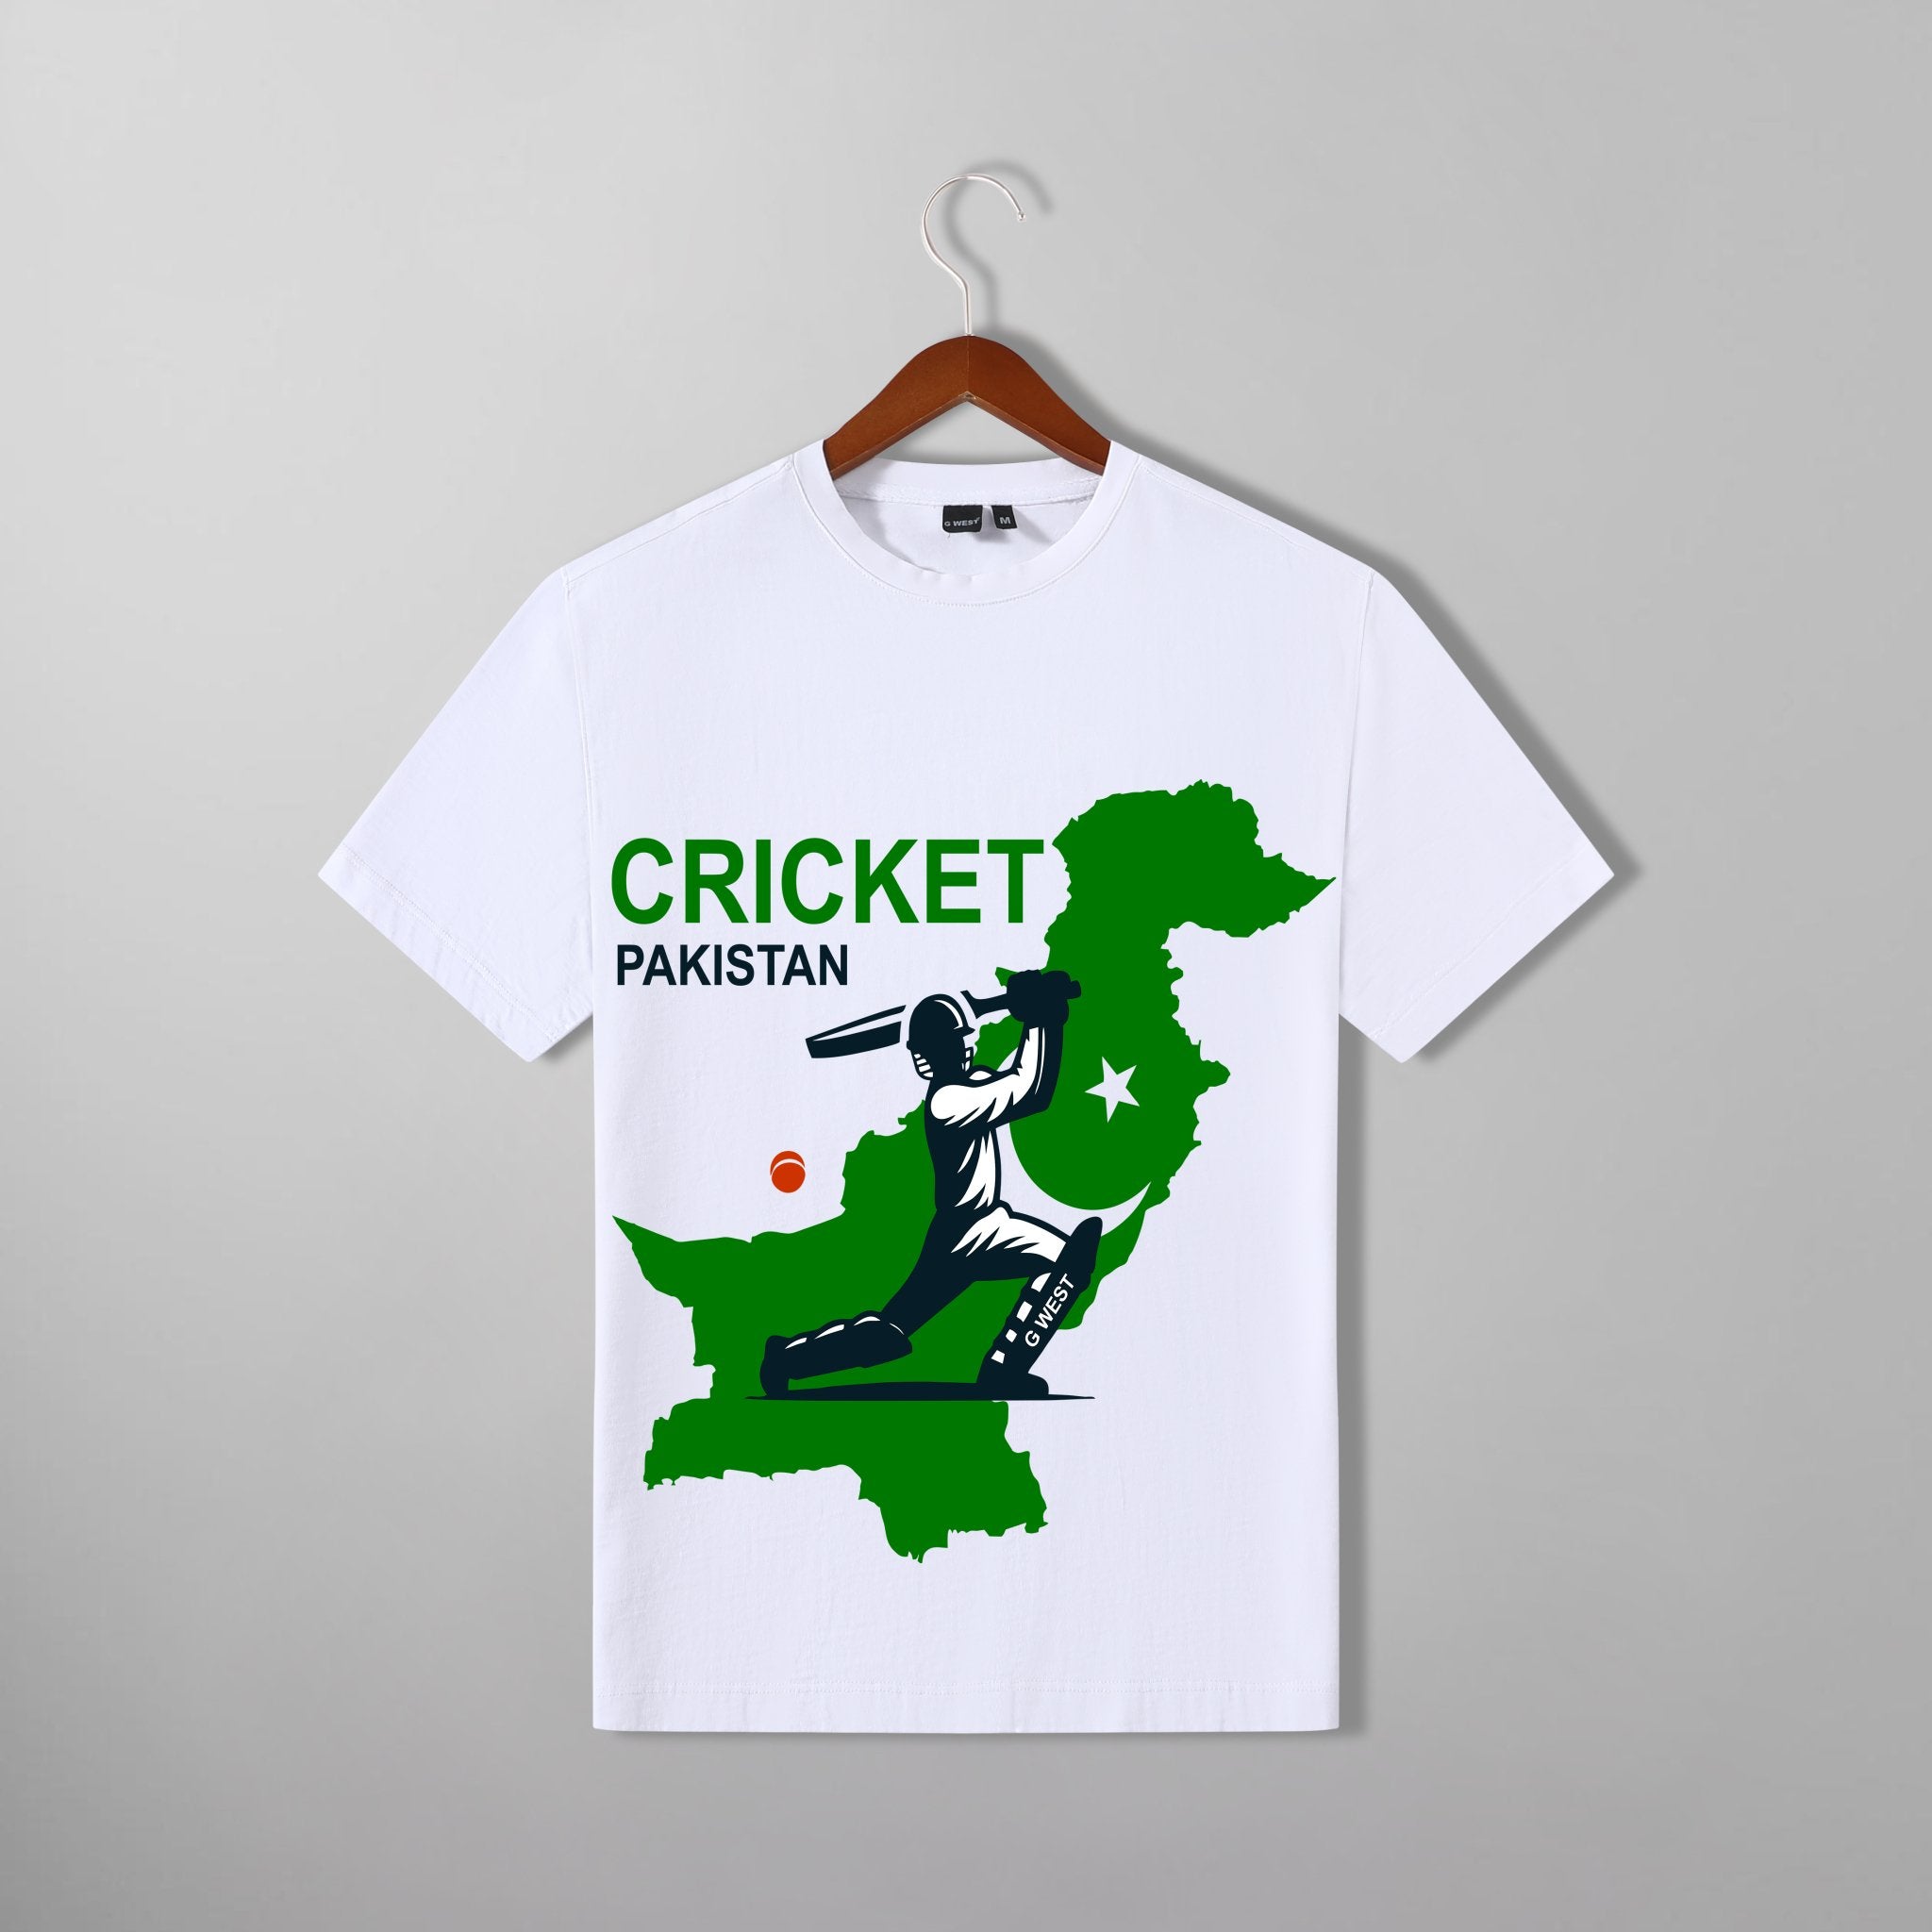 G West Cricket Pakistan T-Shirt : GWDTFL2407 - 2 COLORS - G West